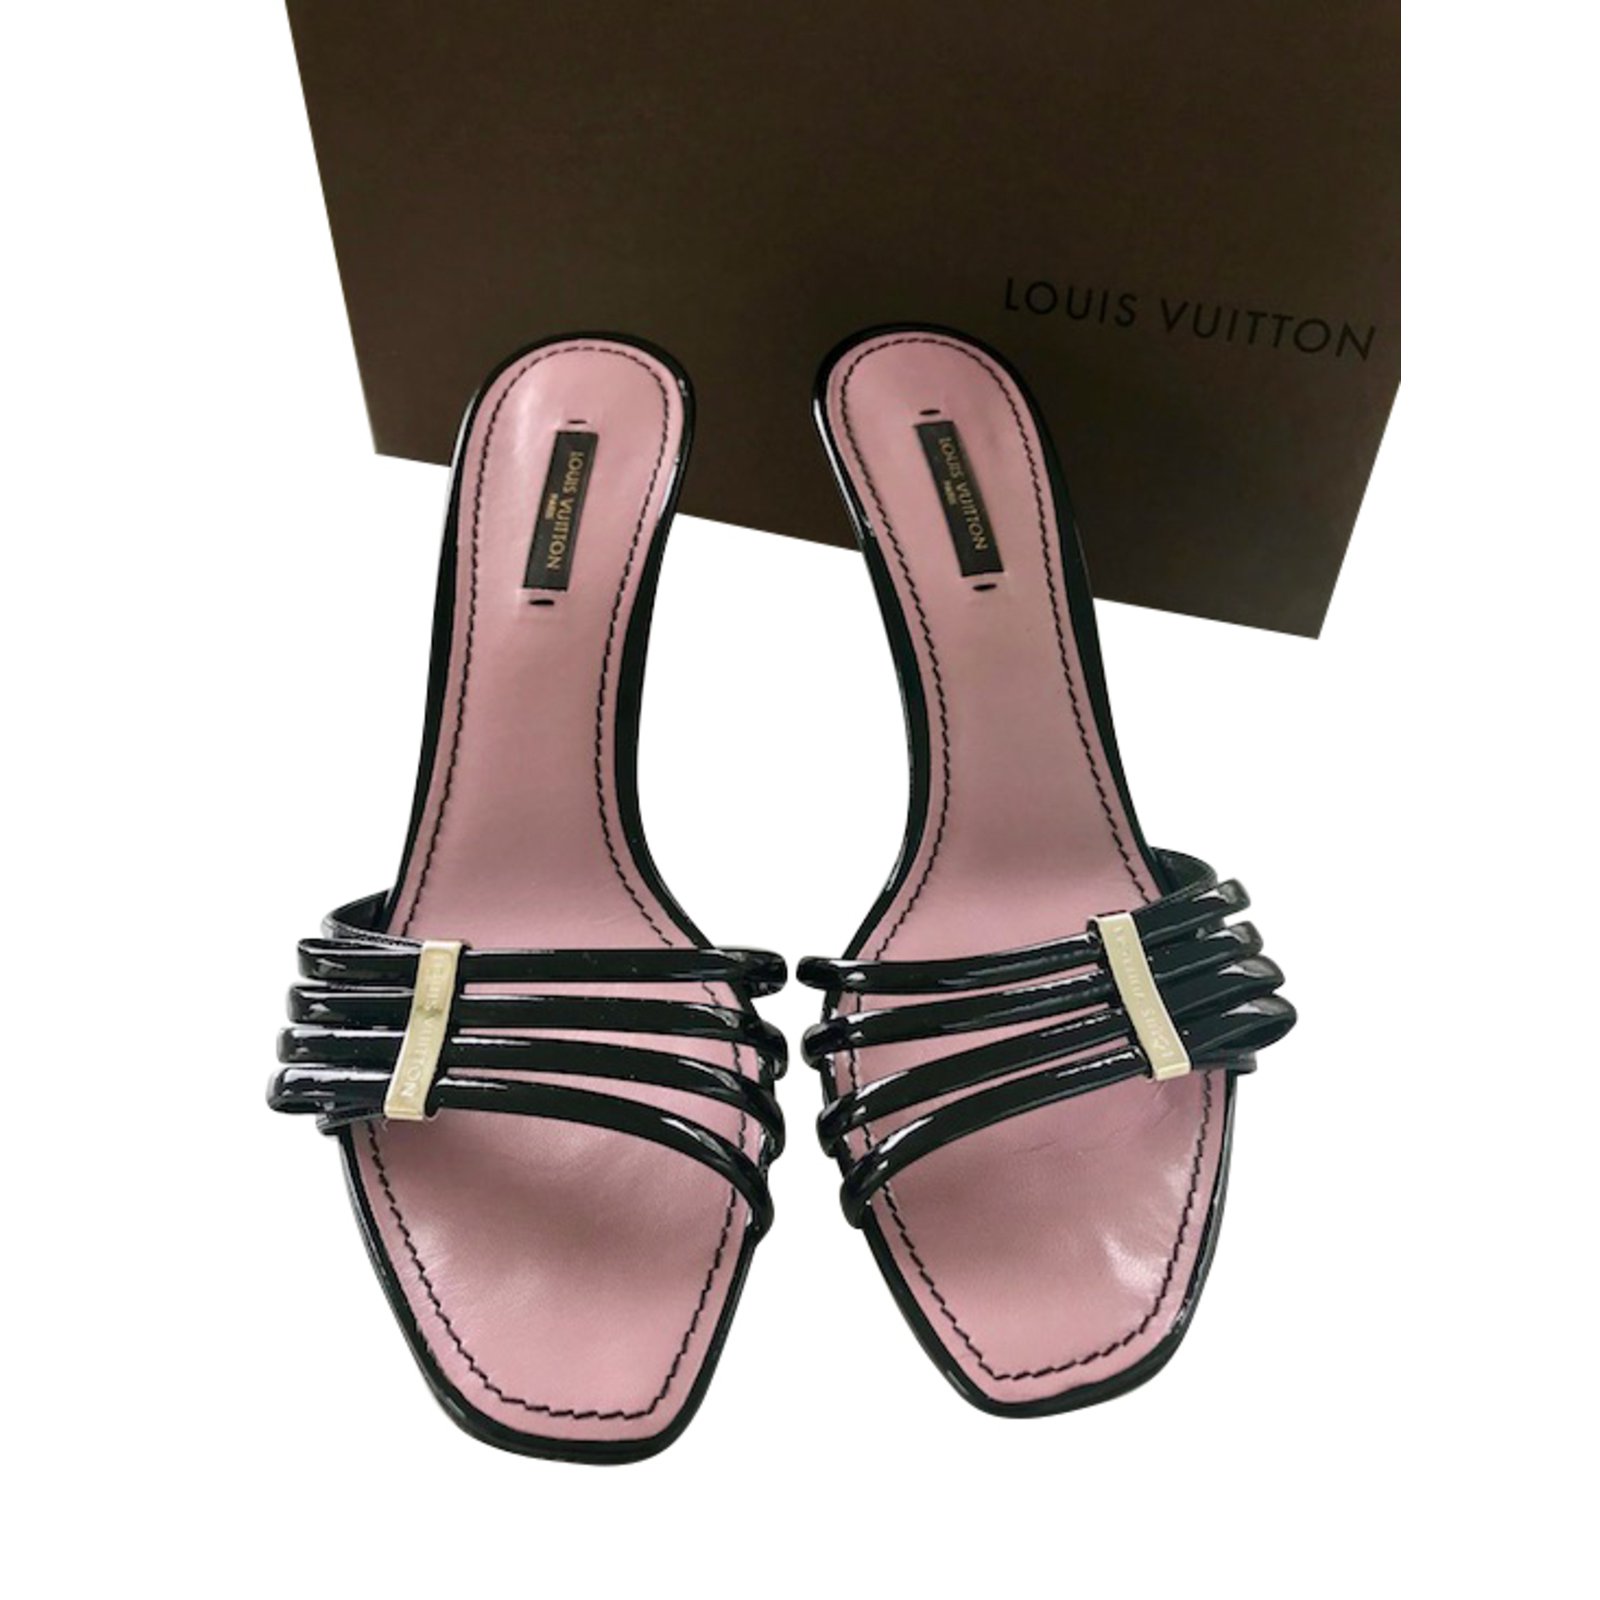 Louis Vuitton Revival Mule Pink. Size 38.5